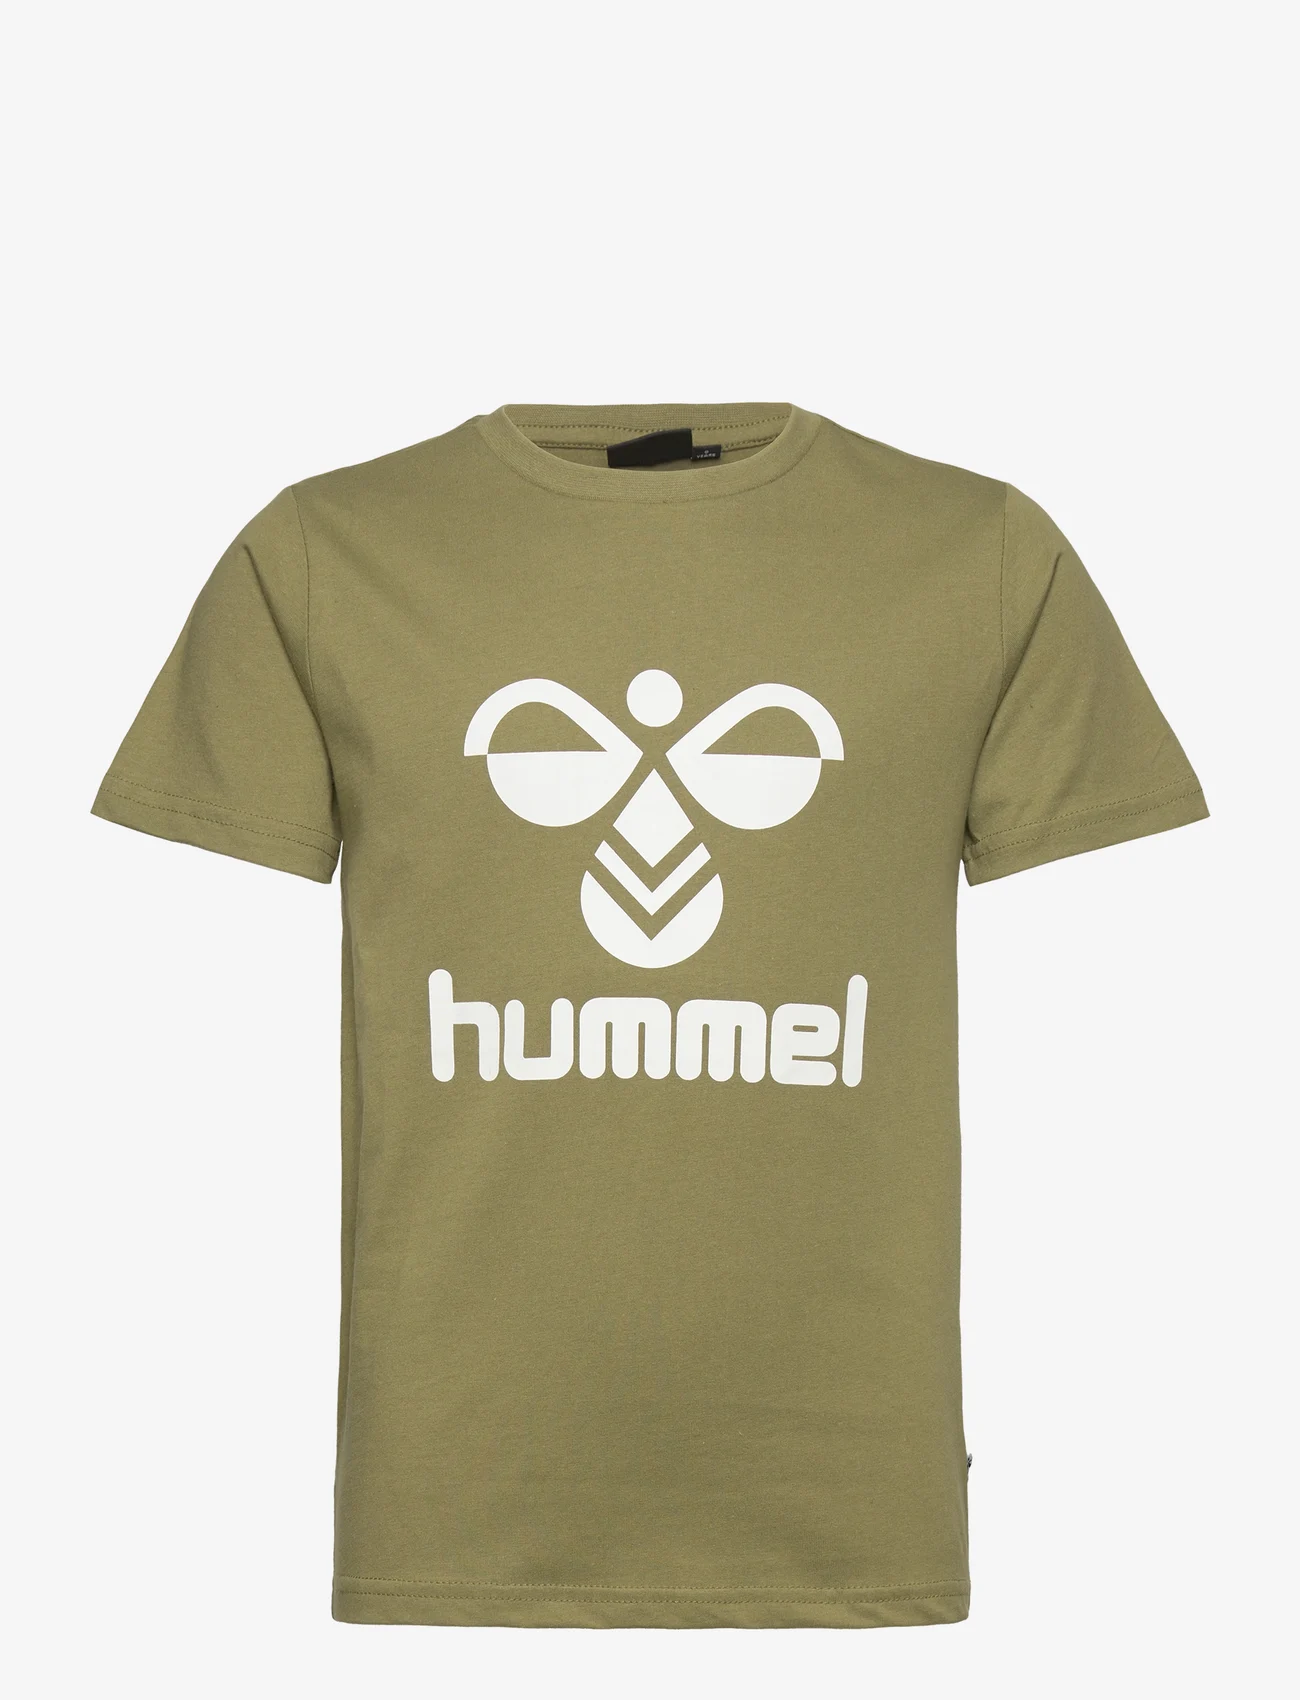 Hummel - hmlTRES T-SHIRT S/S - kurzärmelig - capulet olive - 0